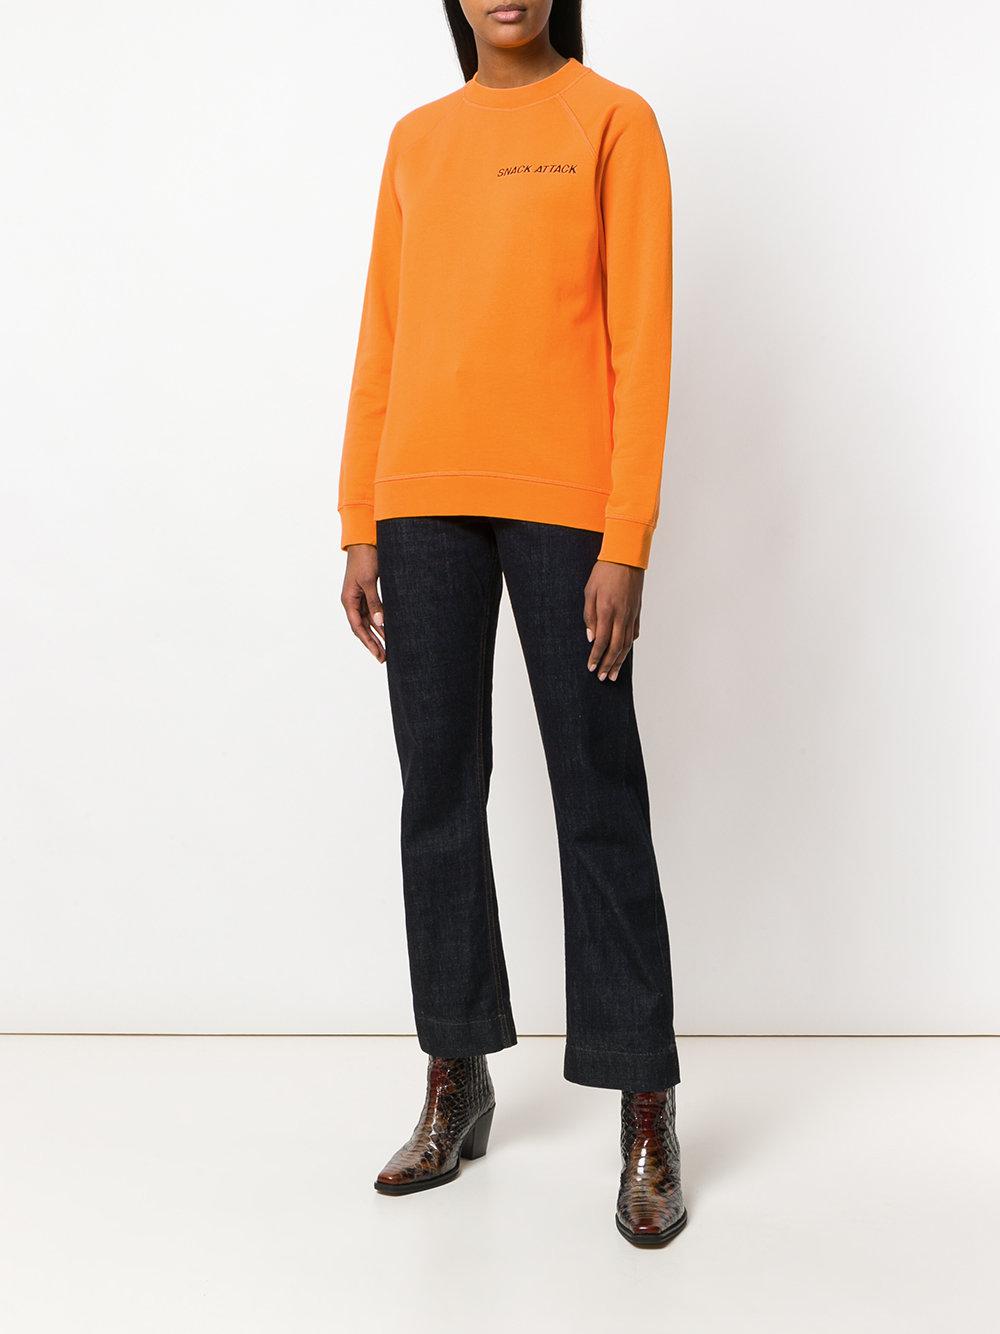 Ganni Cotton Snack Attack Sweatshirt in Yellow & Orange (Orange) - Lyst